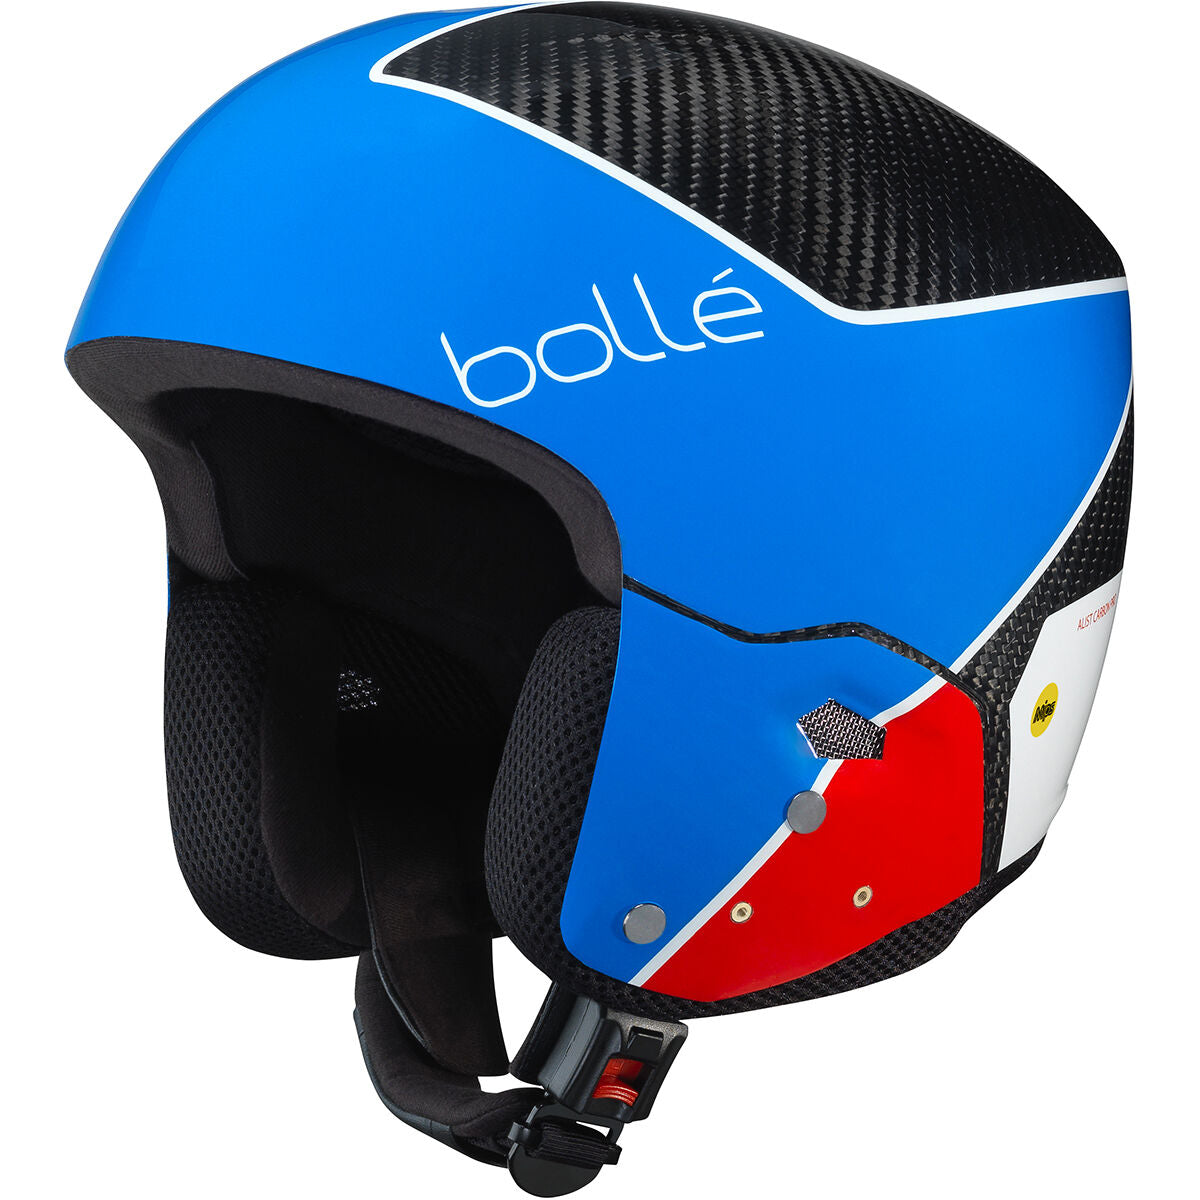 Bolle Medalist Carbon Pro Mips Snow Helmet  Race Blue Shiny S-M 53-56